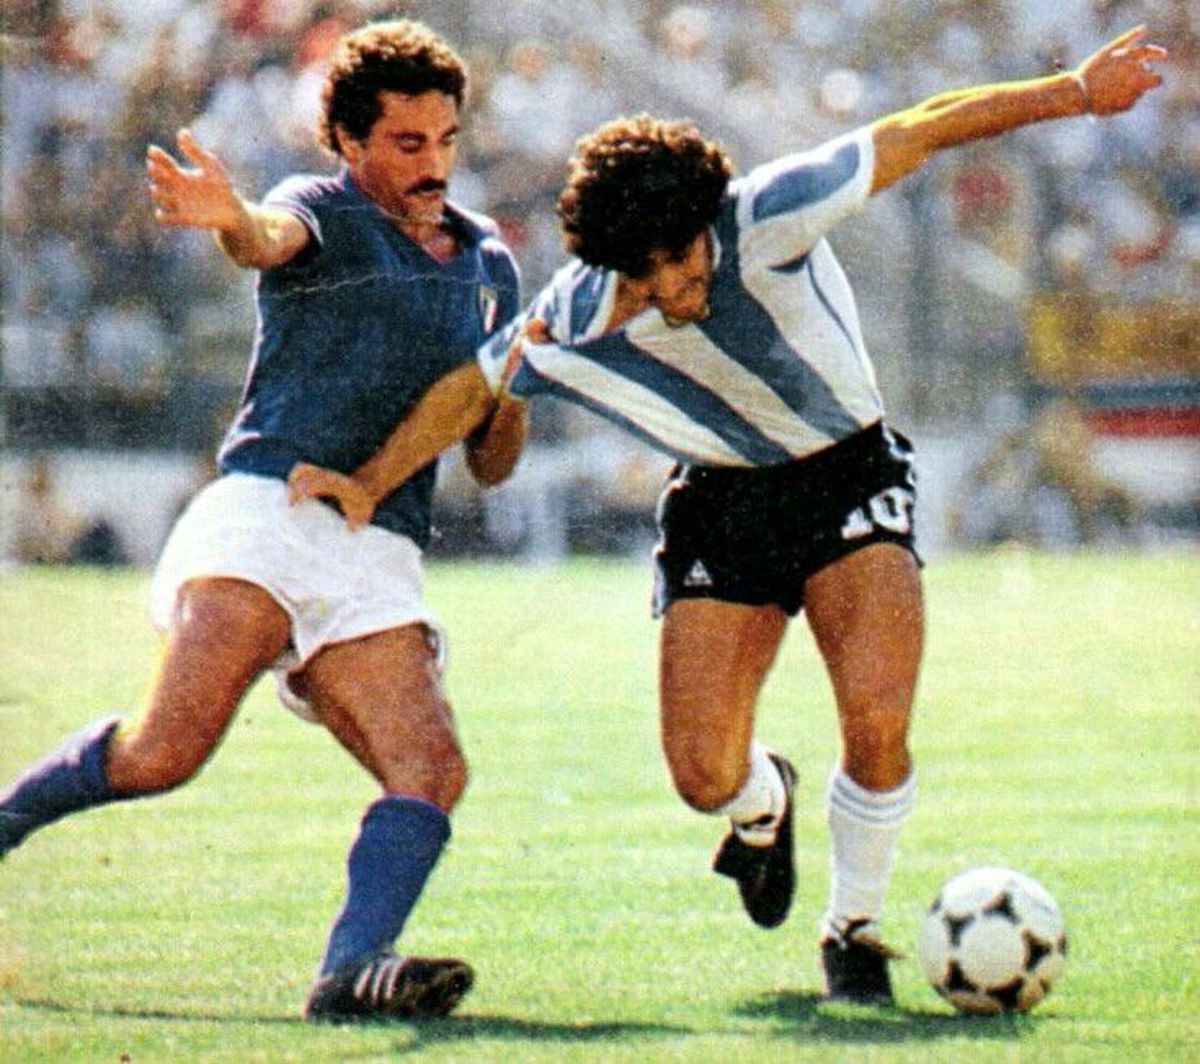 Omagiu inedit adus lui Diego Maradona! Ce s-a întâmplat pe stadioanele rivalelor Boca Juniors şi River Plate